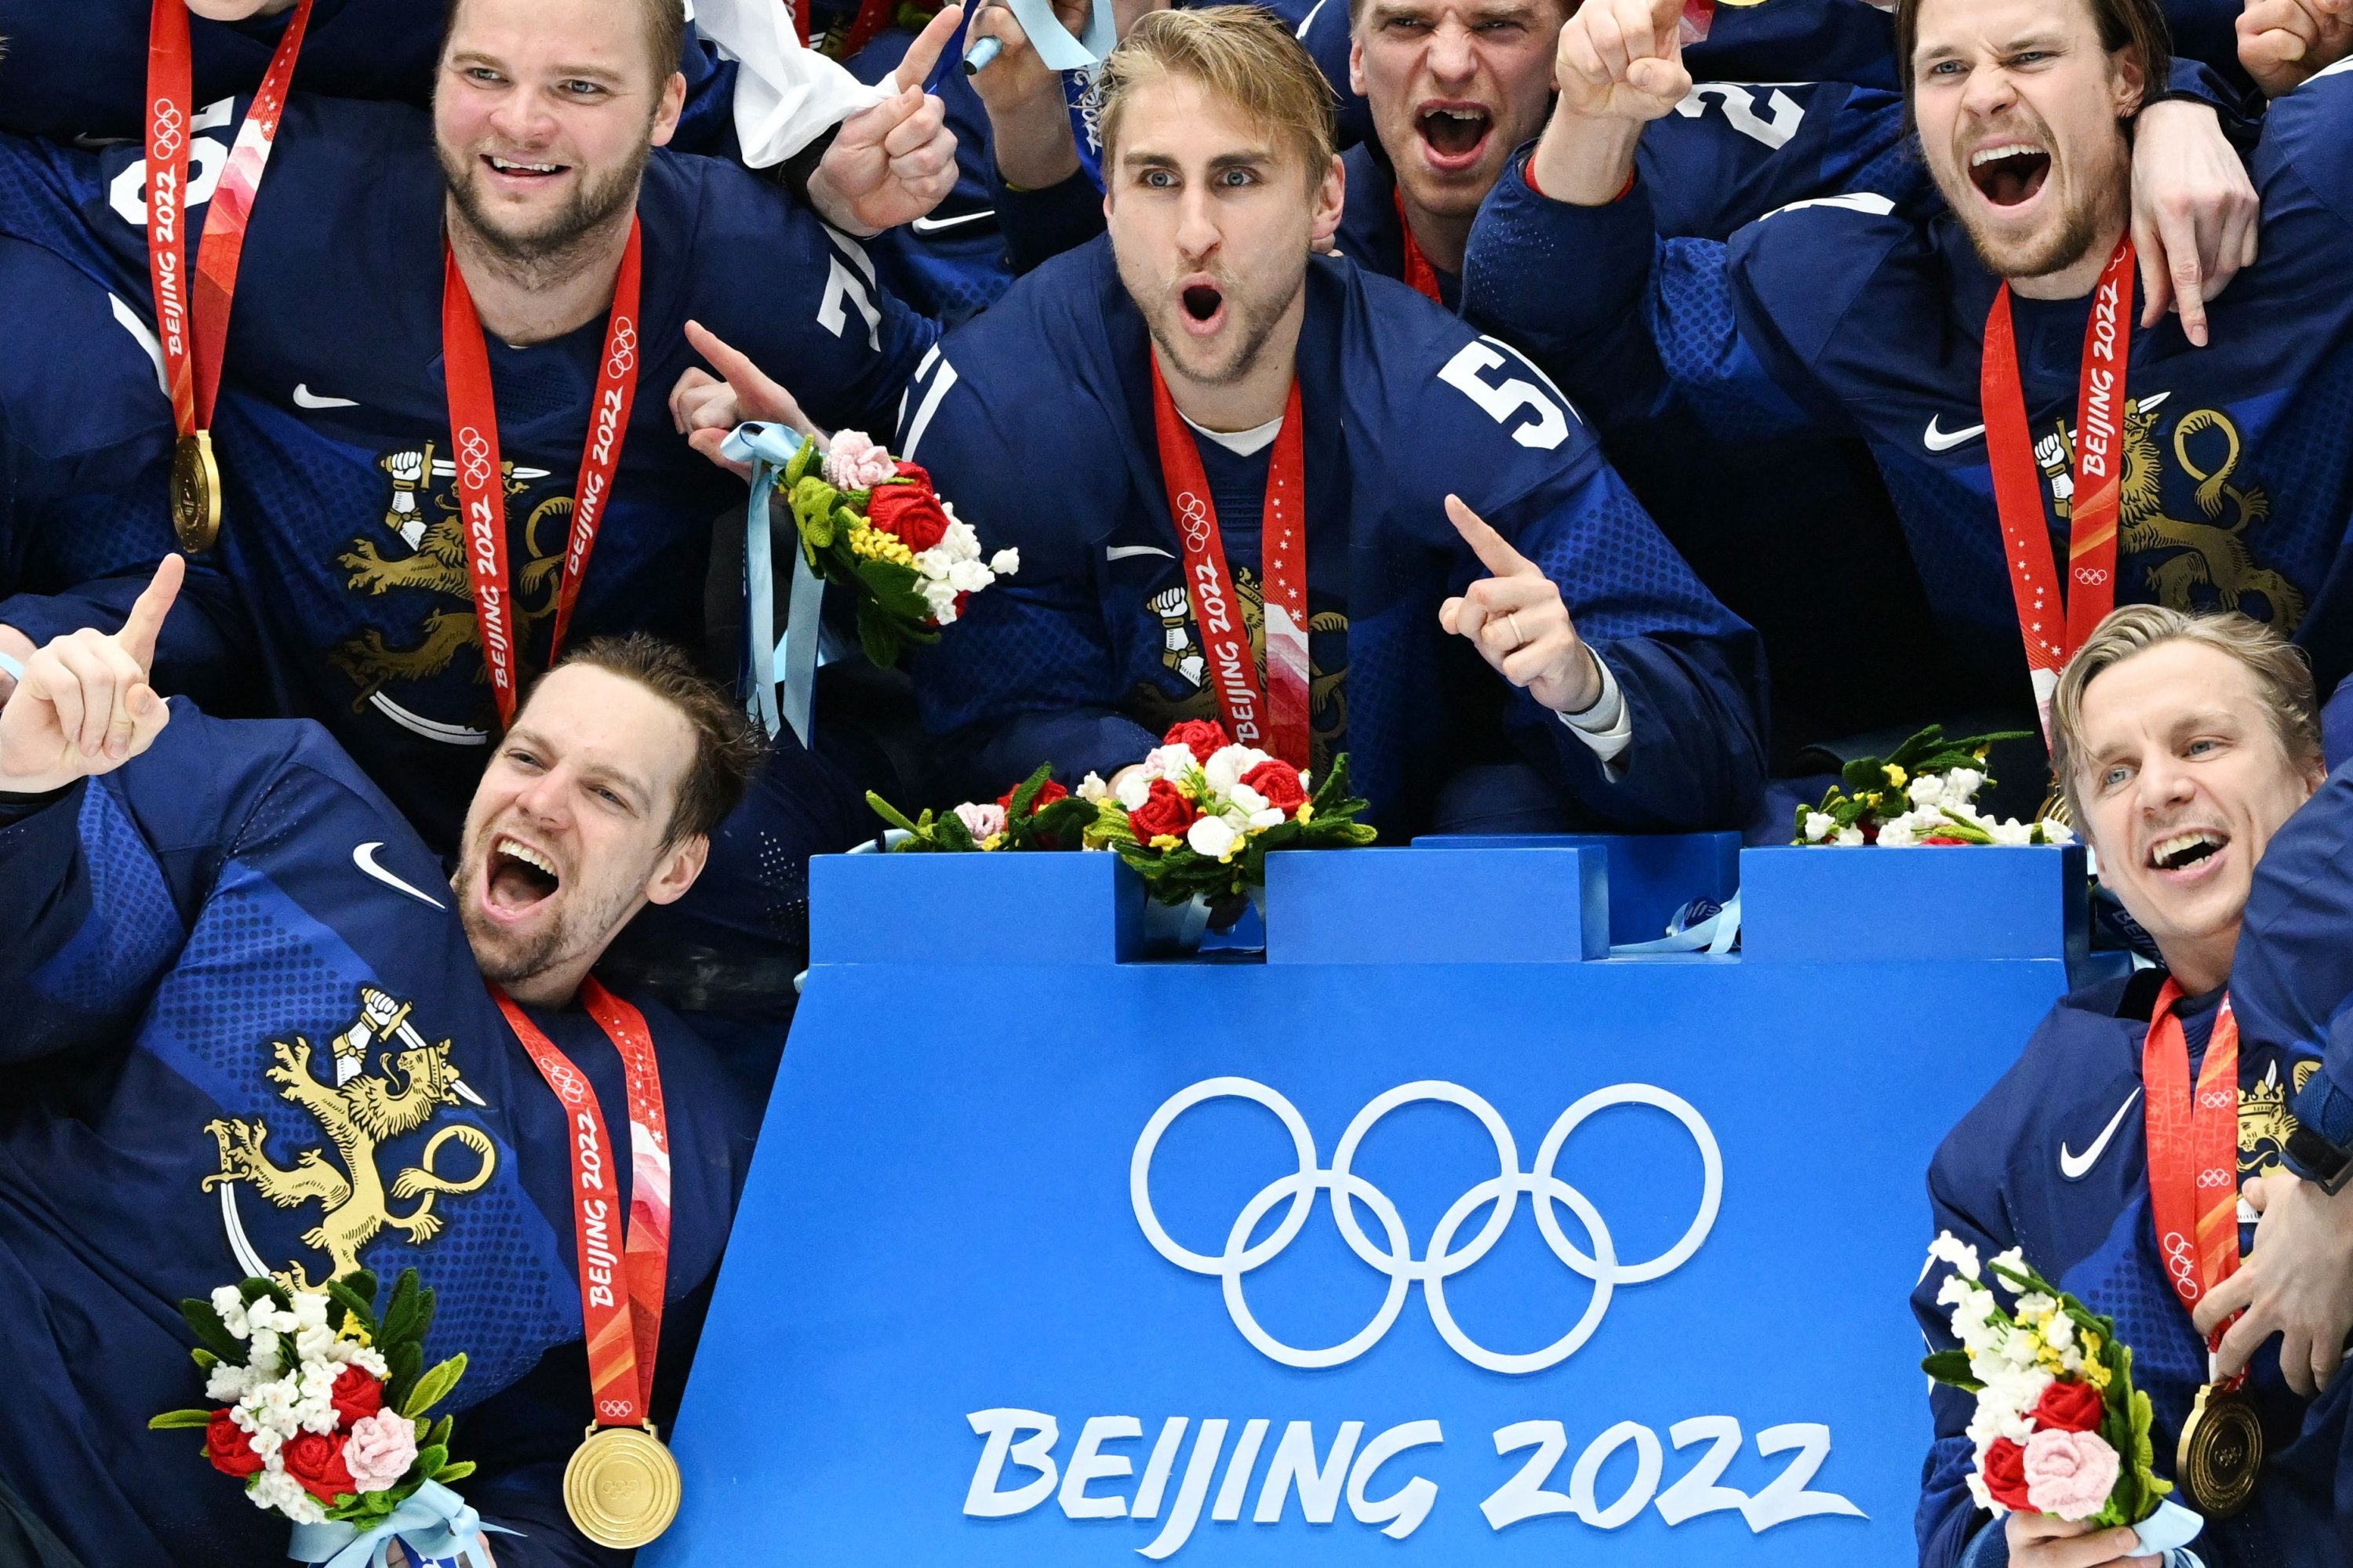 Sydänsärky Shiffrinille, Suomi nappasi viimeisen kultaa Pekingin kisoissa